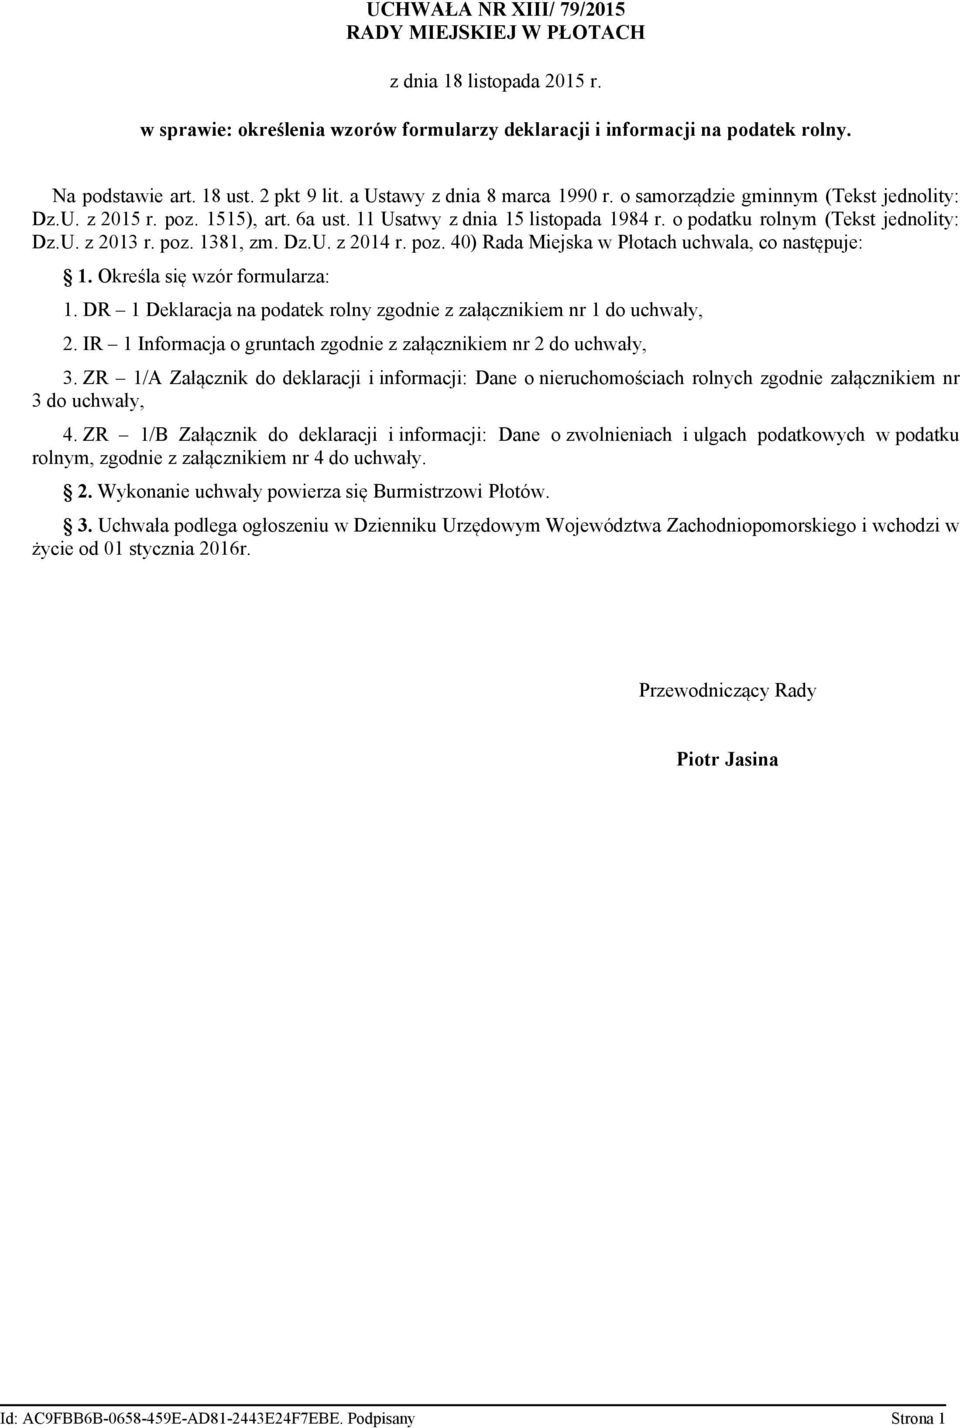 poz. 1381 zm. Dz.U. z 2014 r. poz. 40) Rada Miejska w Płotach uchwala co następuje: 1. Określa się wzór formularza: 1. DR 1 Deklaracja na podatek rolny zgodnie z załącznikiem nr 1 do uchwały 2.